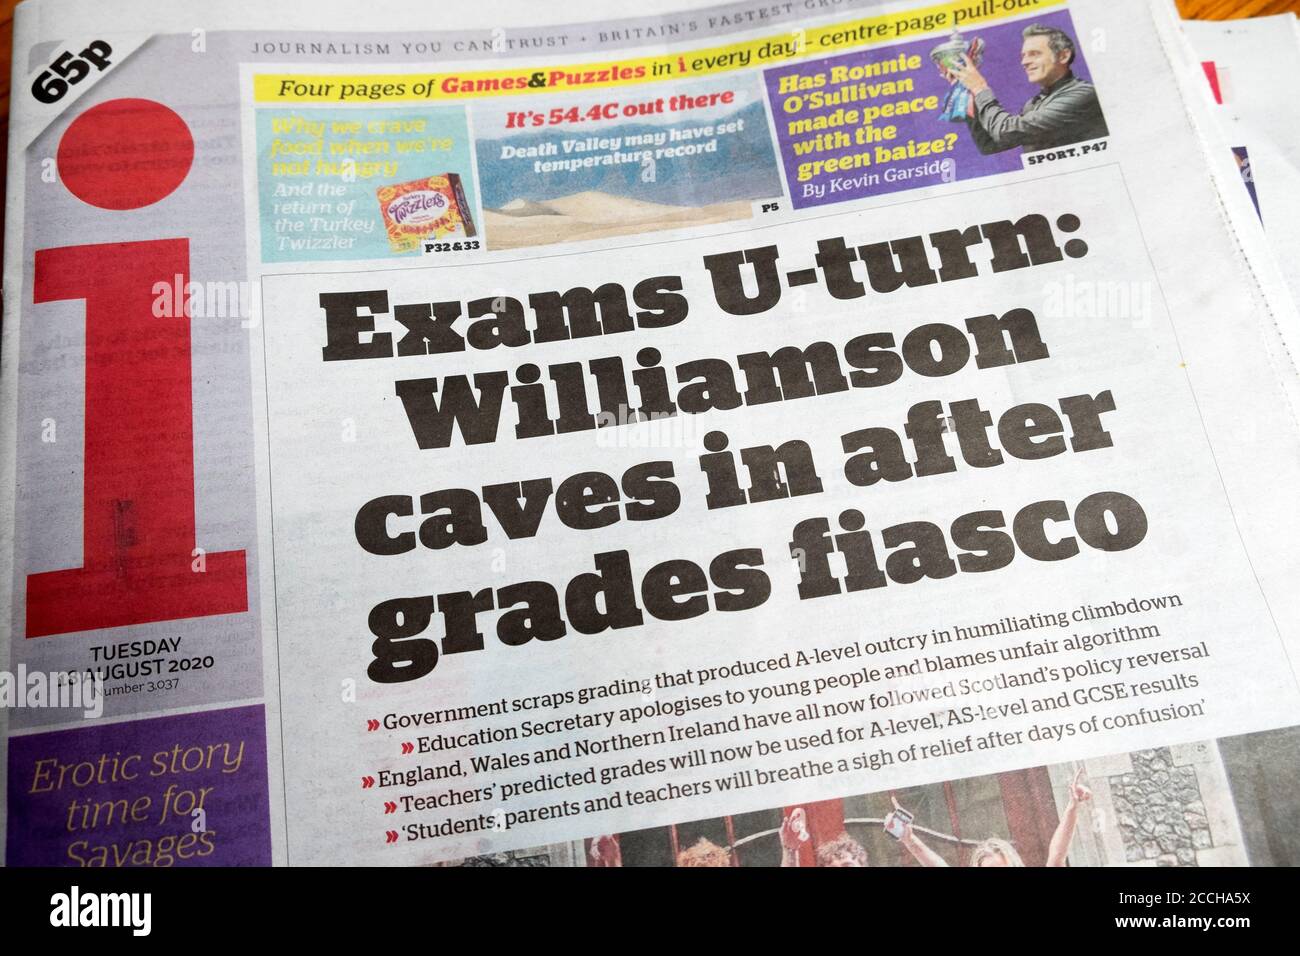 'Exams U-Turn: Willimson Höhlen nach Grades Fiasco' ich Zeitung Überschrift Titelseite Artikel im August 2020 London England Großbritannien Stockfoto